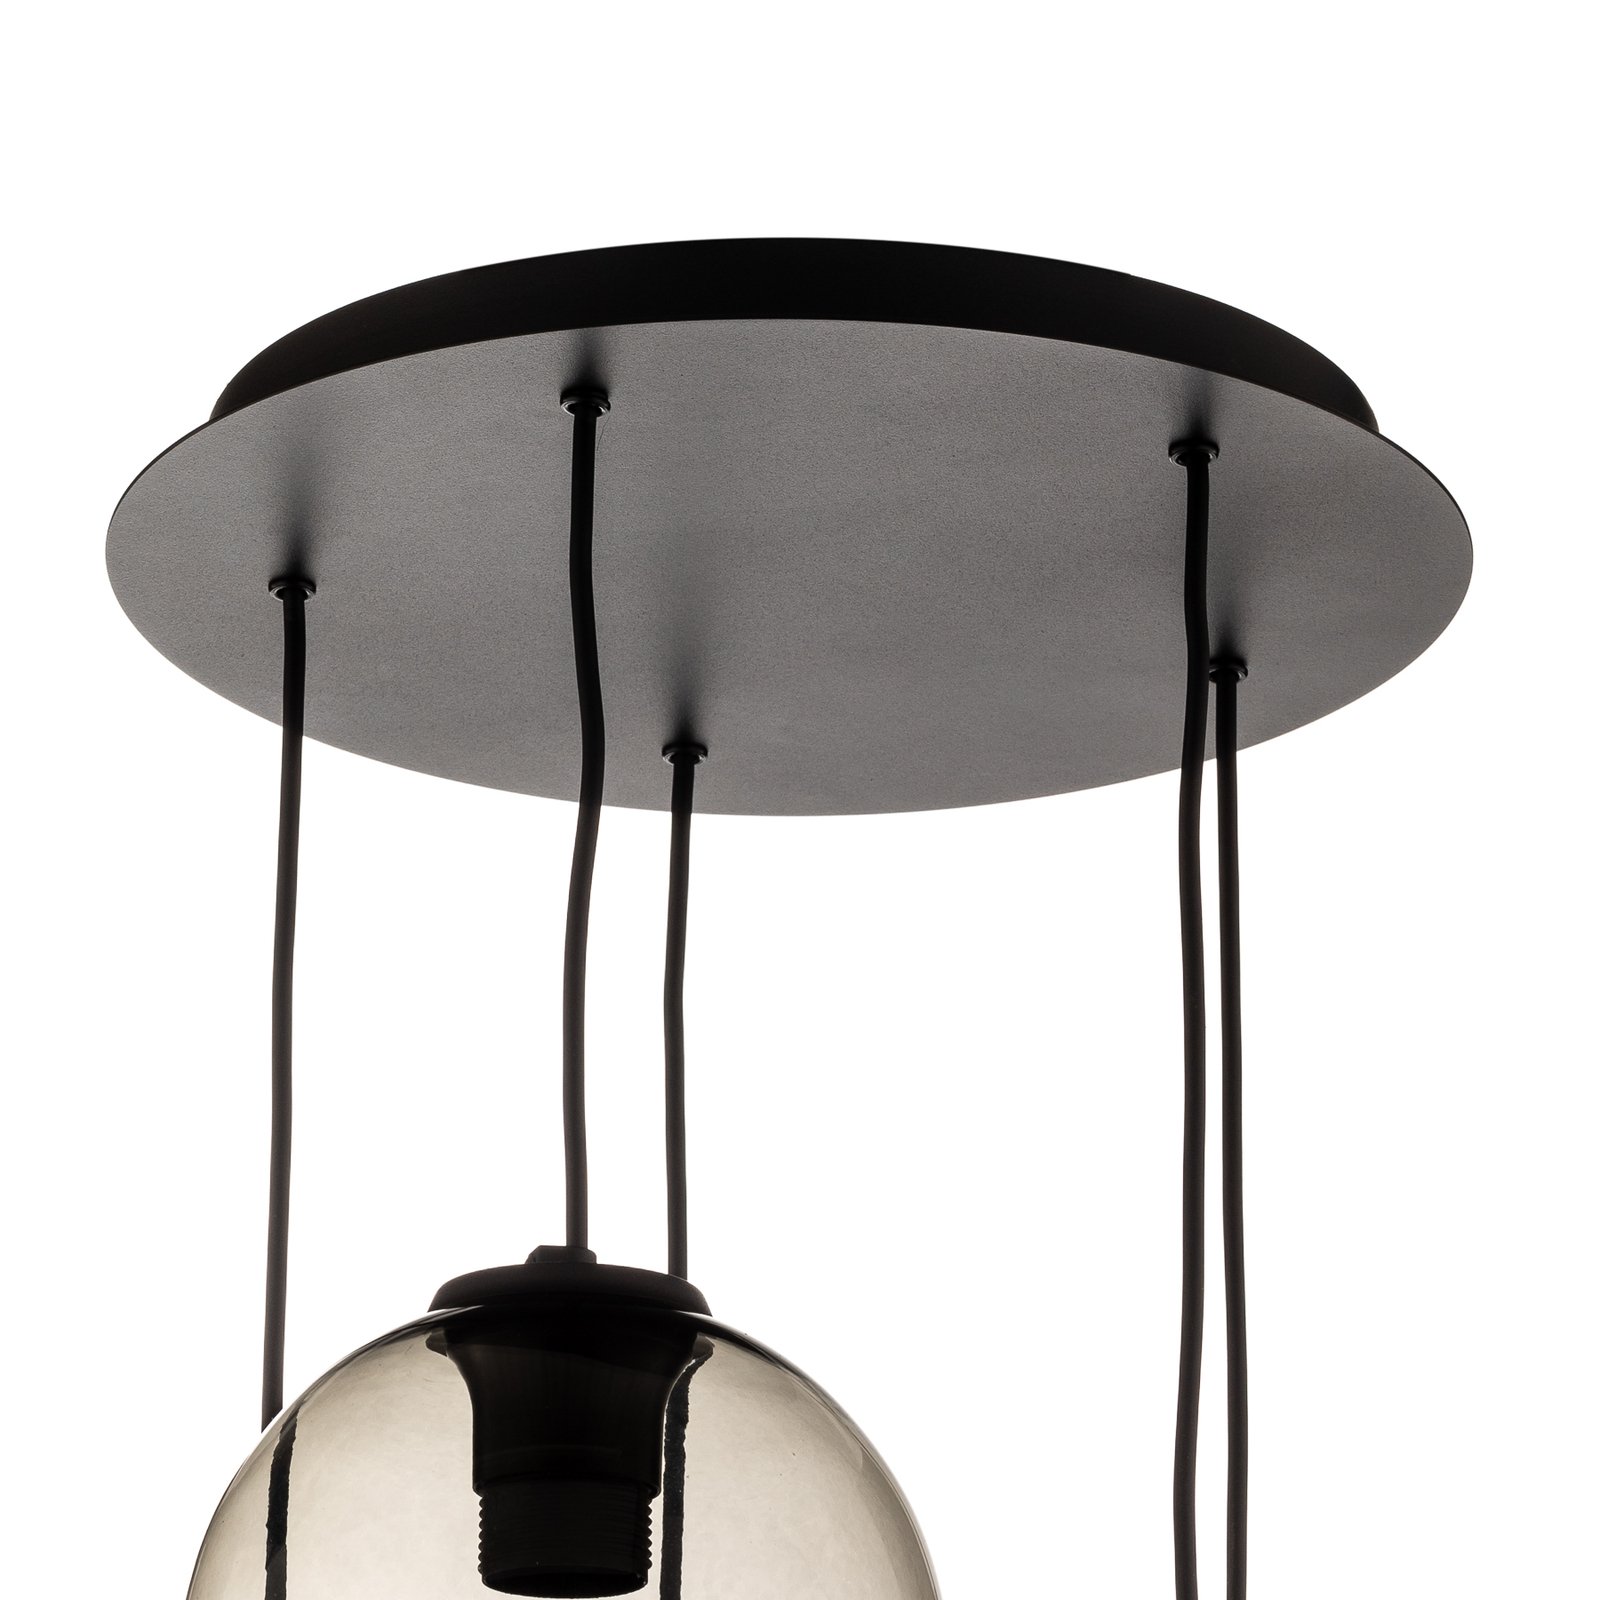 Vetro pendant light made of glass, 5-bulb